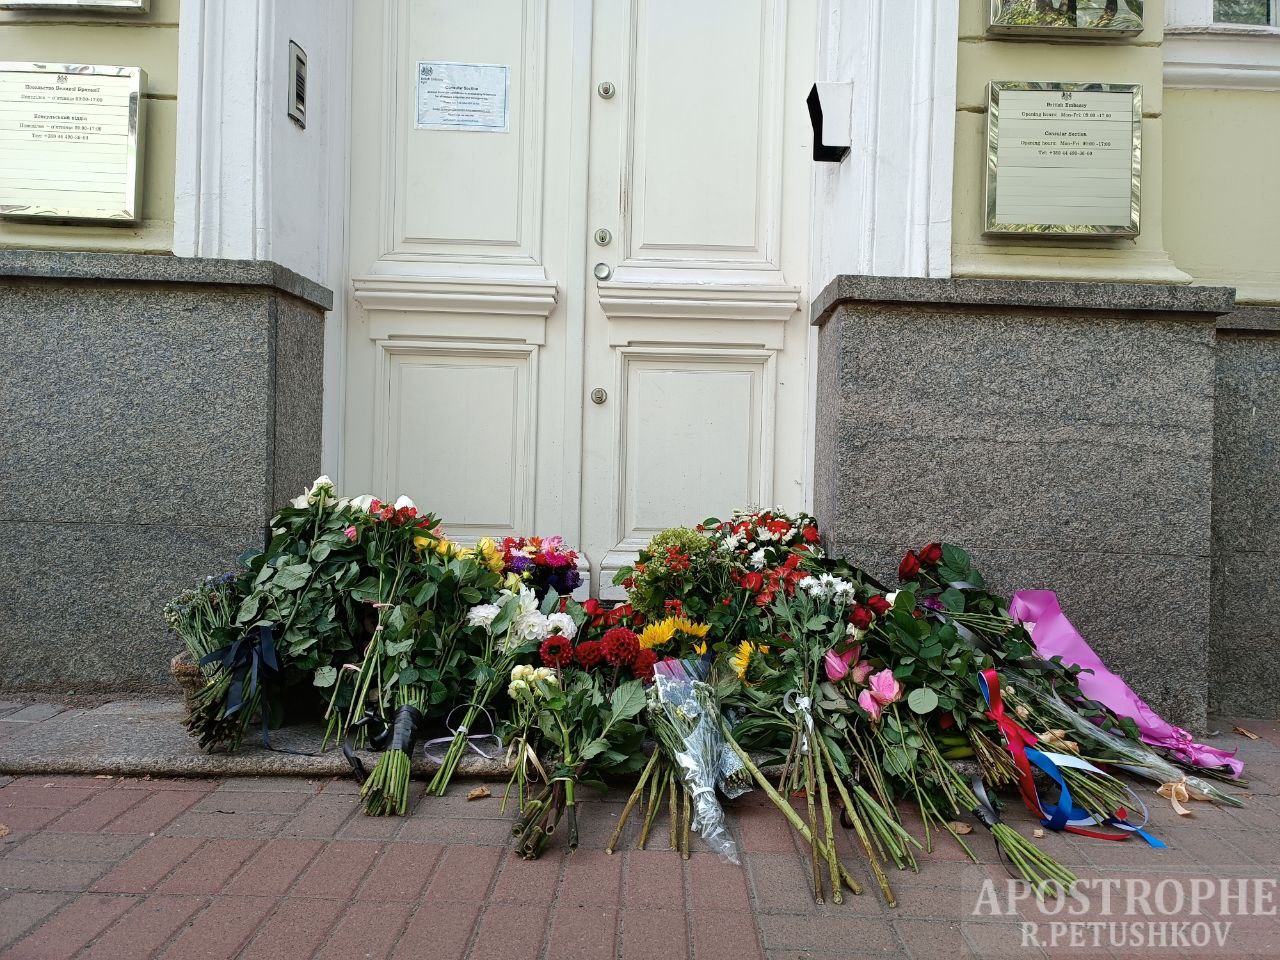 Українці несуть квіти до посольства Британії в Києві, вшановуючи пам'ять Єлизавети II